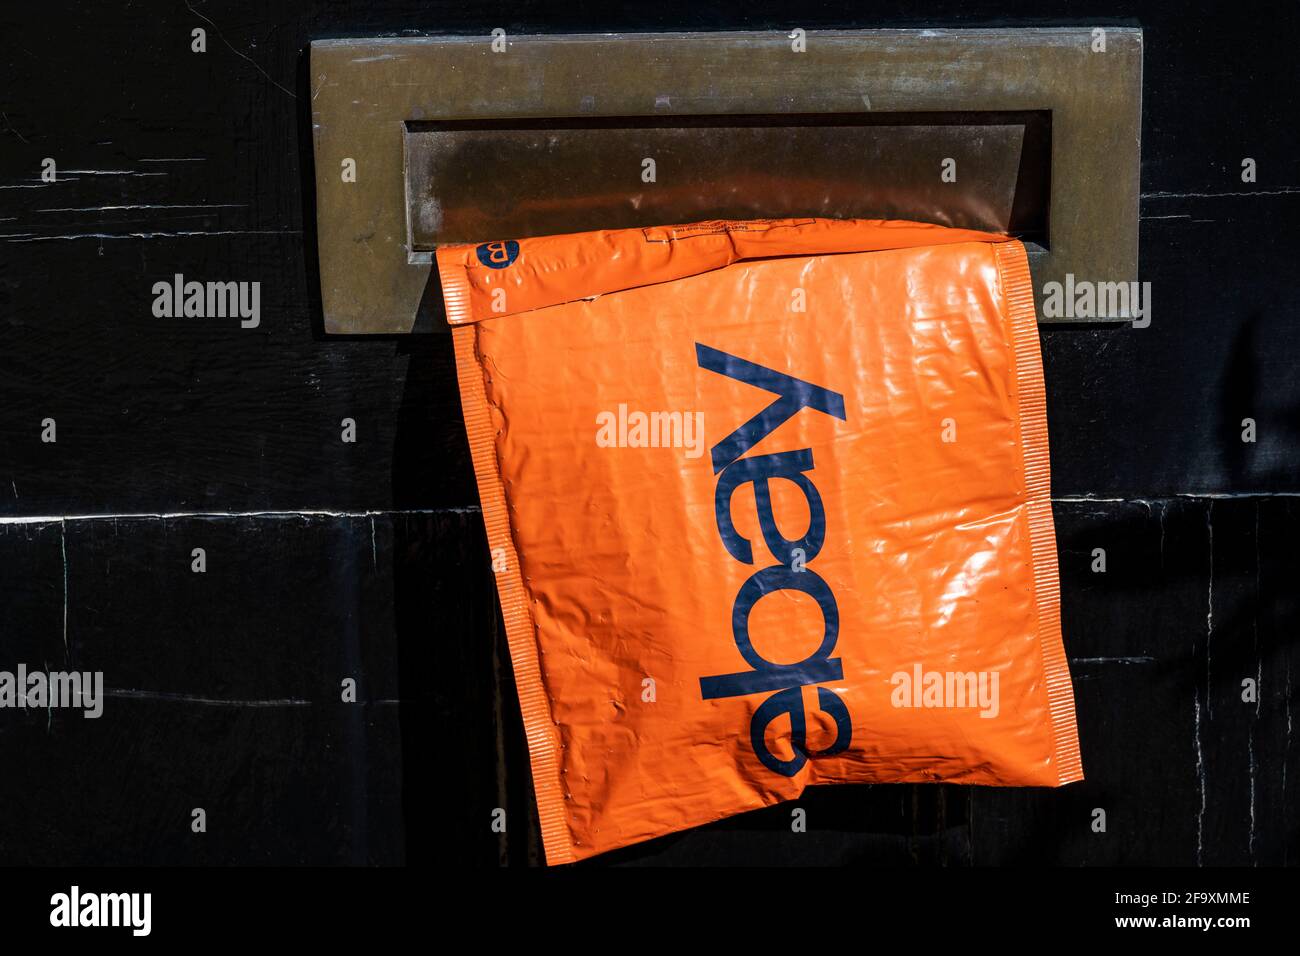 Ebay kleines Paket ragt aus Briefkasten Stockfotografie - Alamy